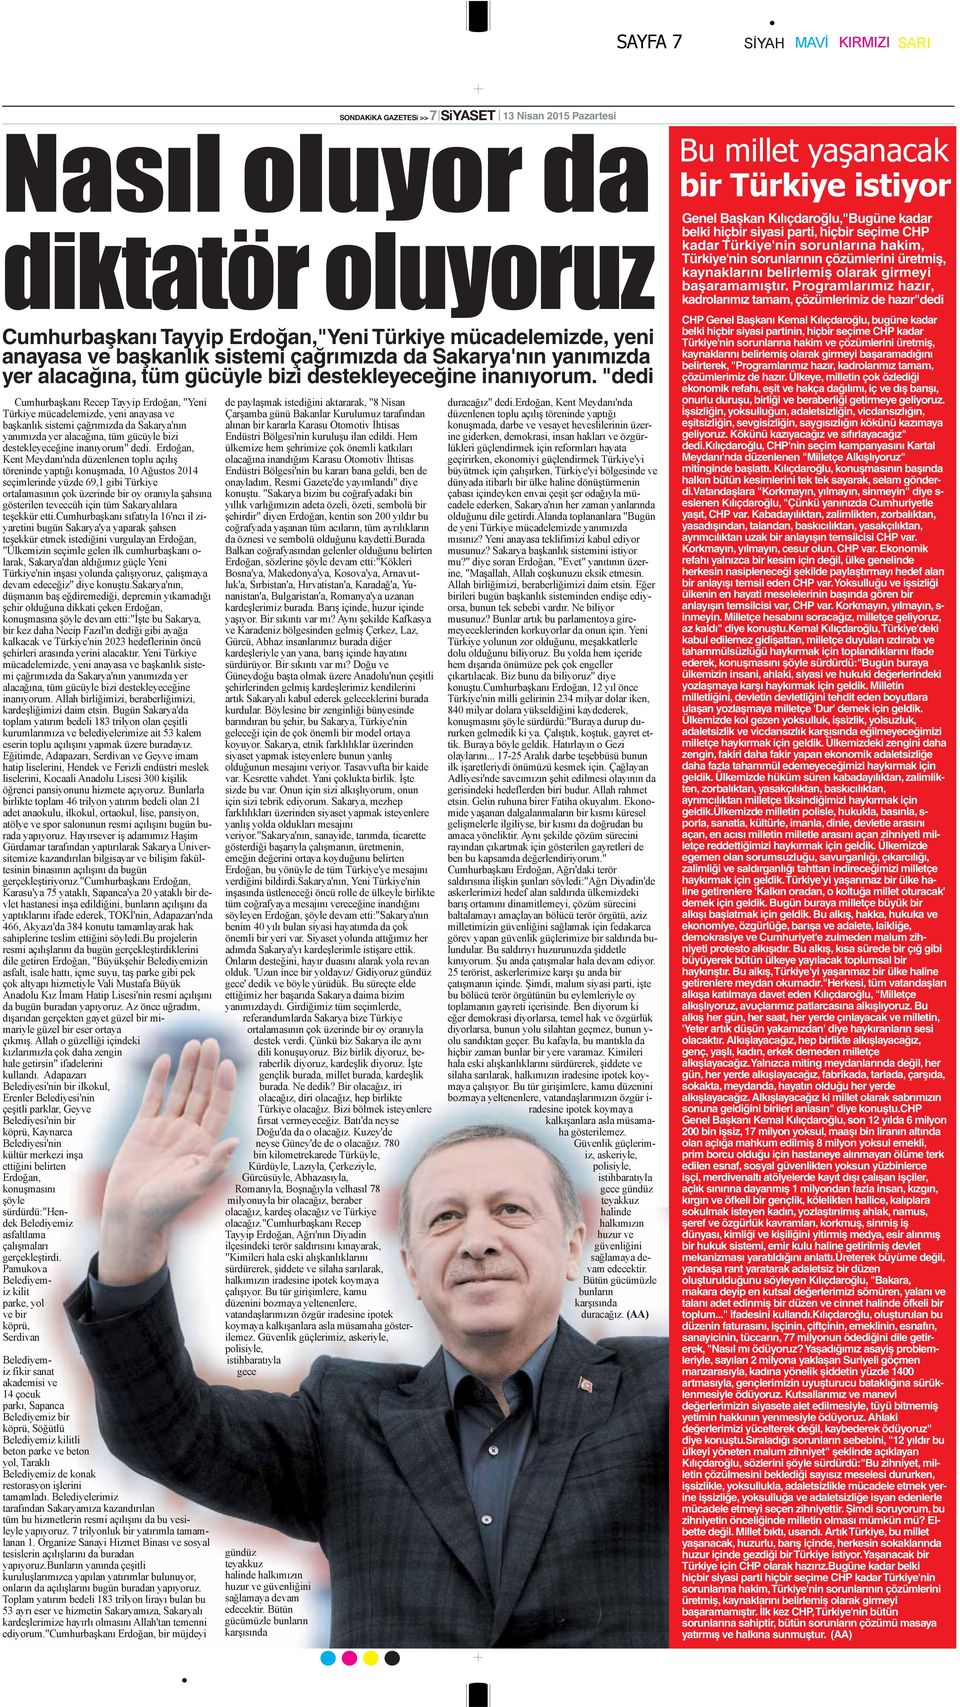 "dedi Genel Başkan Kılıçdaroğlu,"Bugüne kadar belki hiçbir siyasi parti, hiçbir seçime CHP kadar Türkiye'nin sorunlarına hakim, Türkiye'nin sorunlarının çözümlerini üretmiş, kaynaklarını belirlemiş